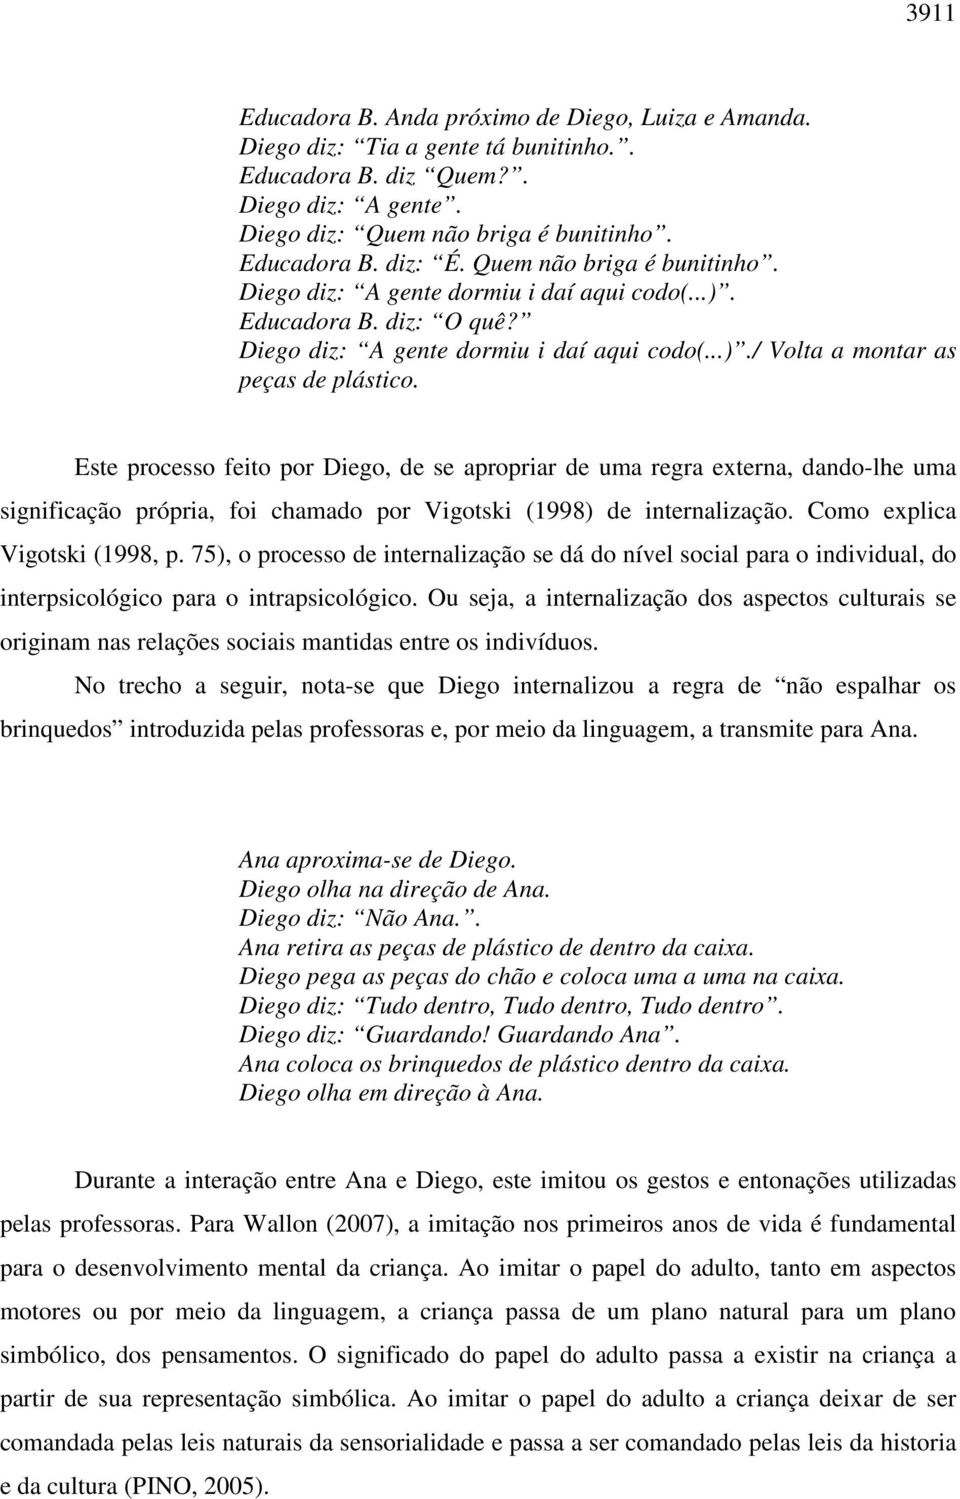 Este processo feito por Diego, de se apropriar de uma regra externa, dando-lhe uma significação própria, foi chamado por Vigotski (1998) de internalização. Como explica Vigotski (1998, p.